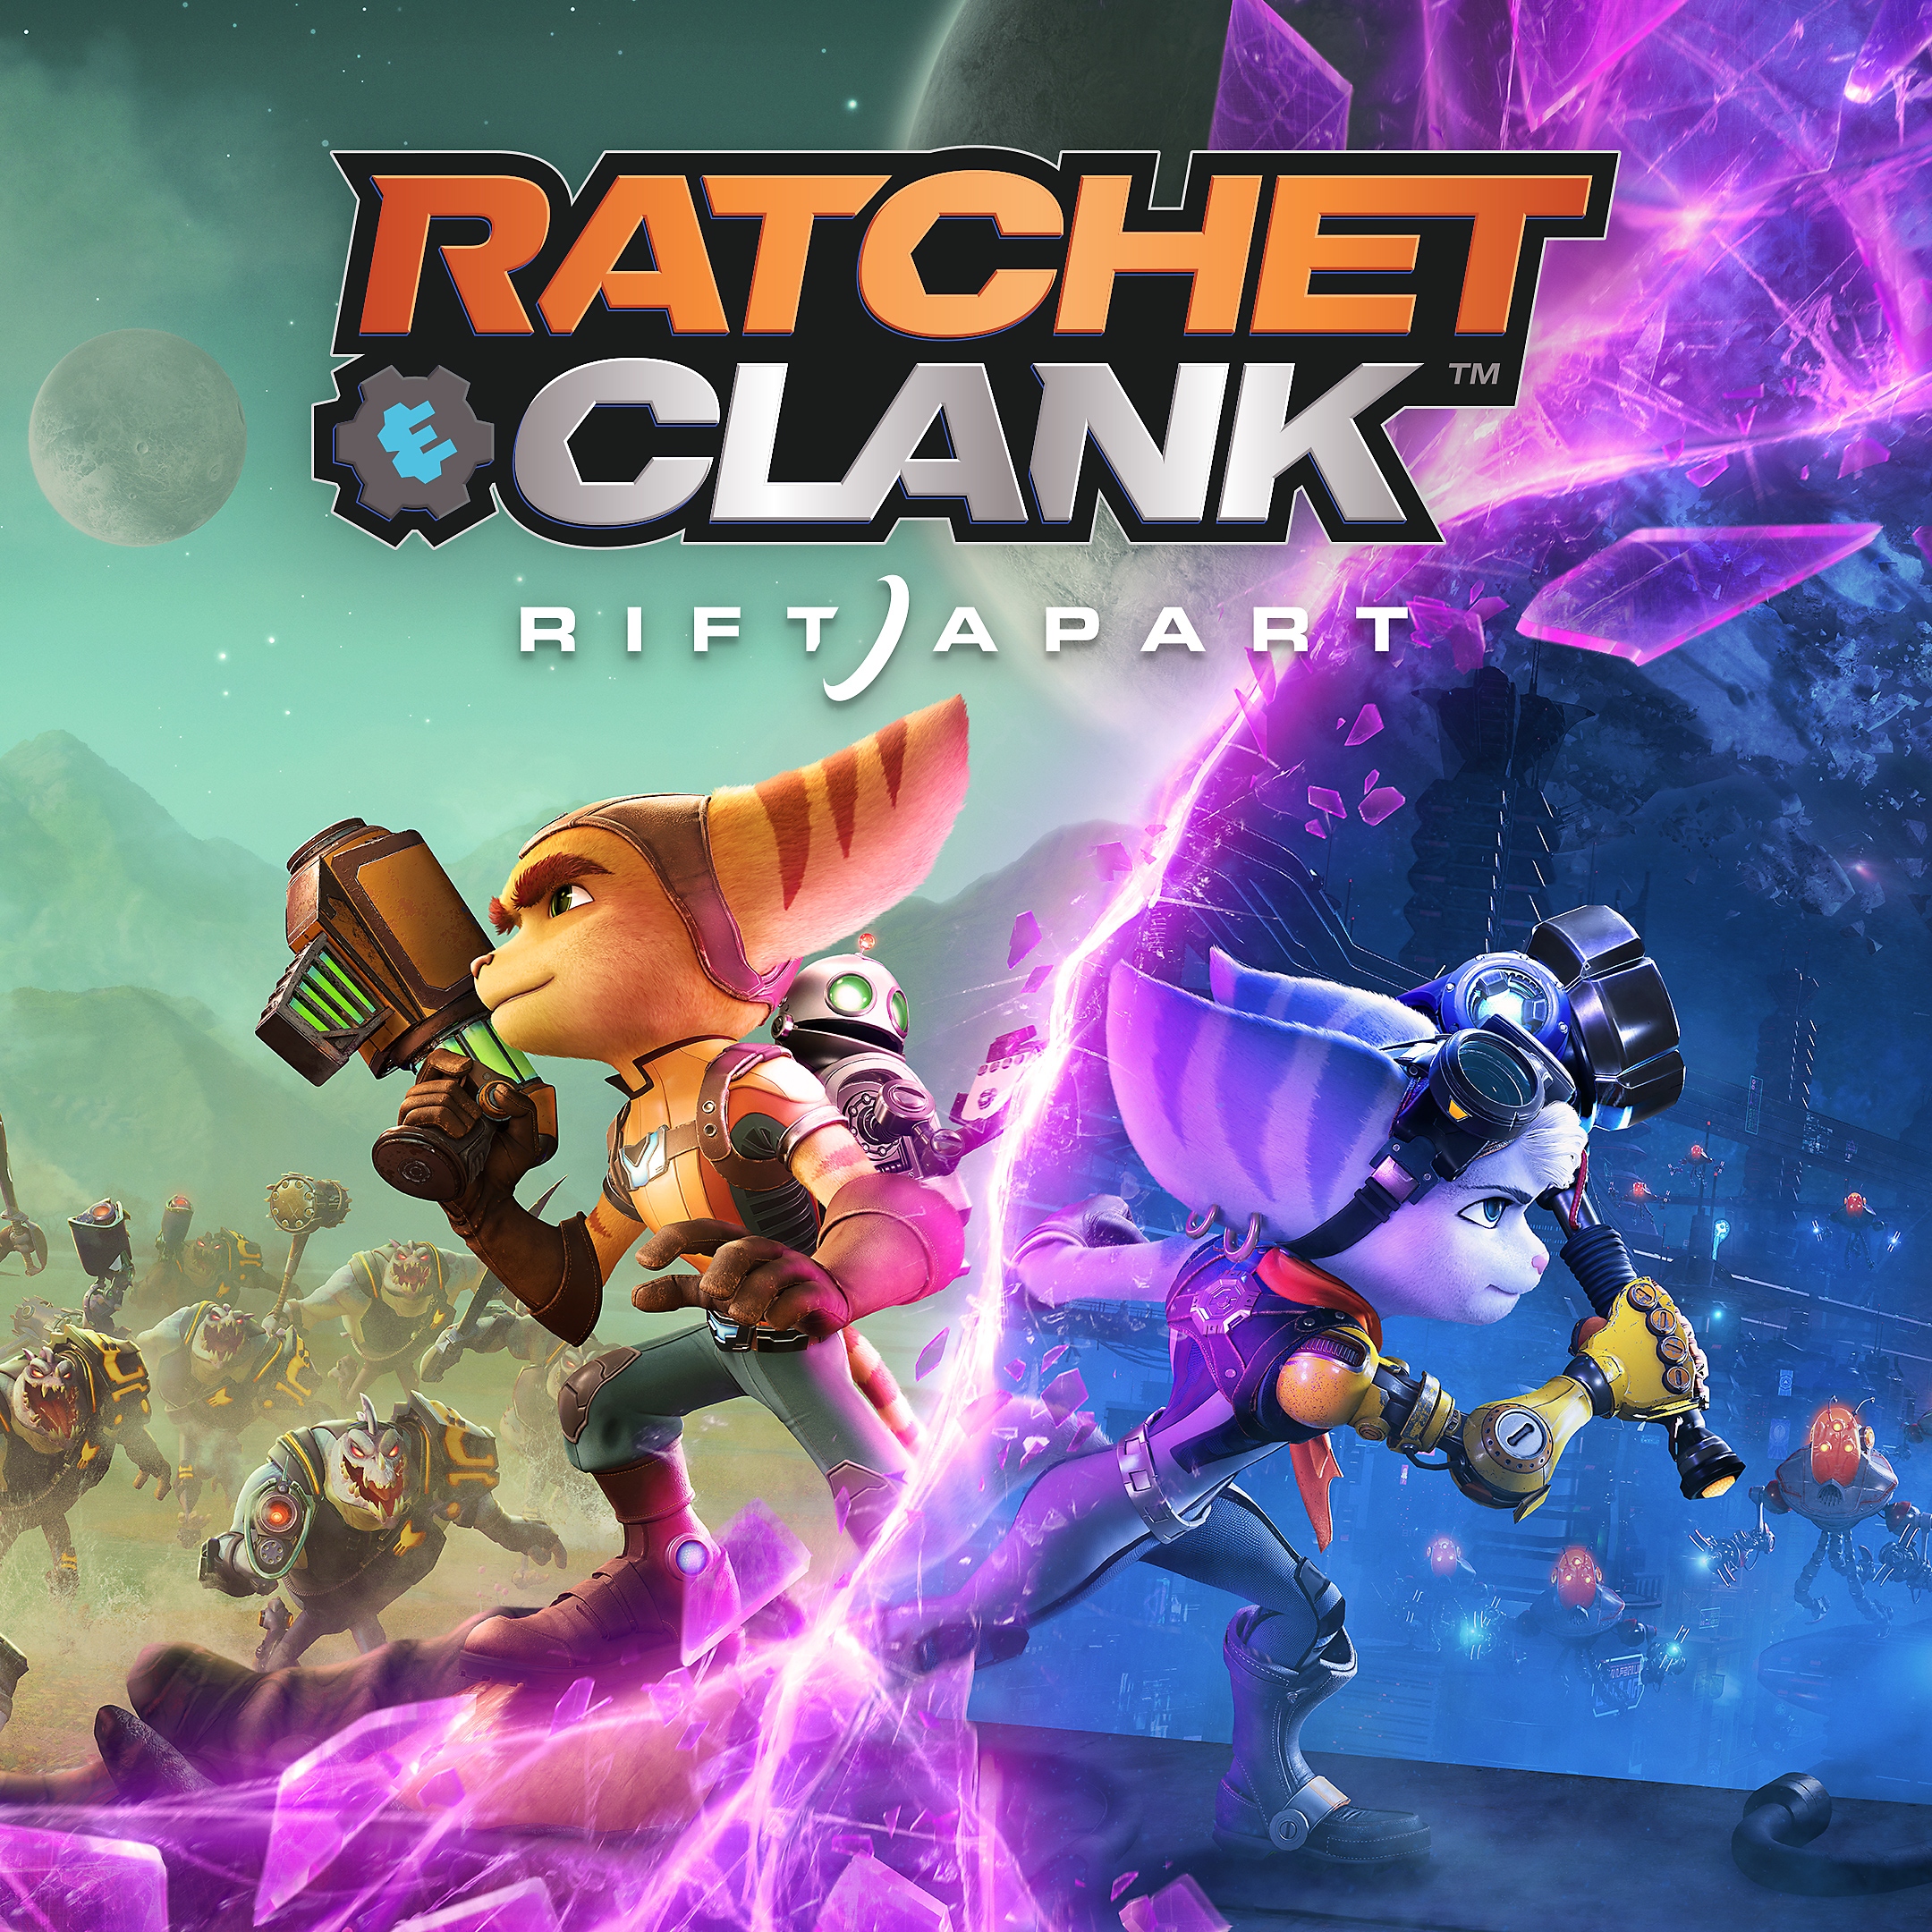 Ratchet and clank, minijatura igre